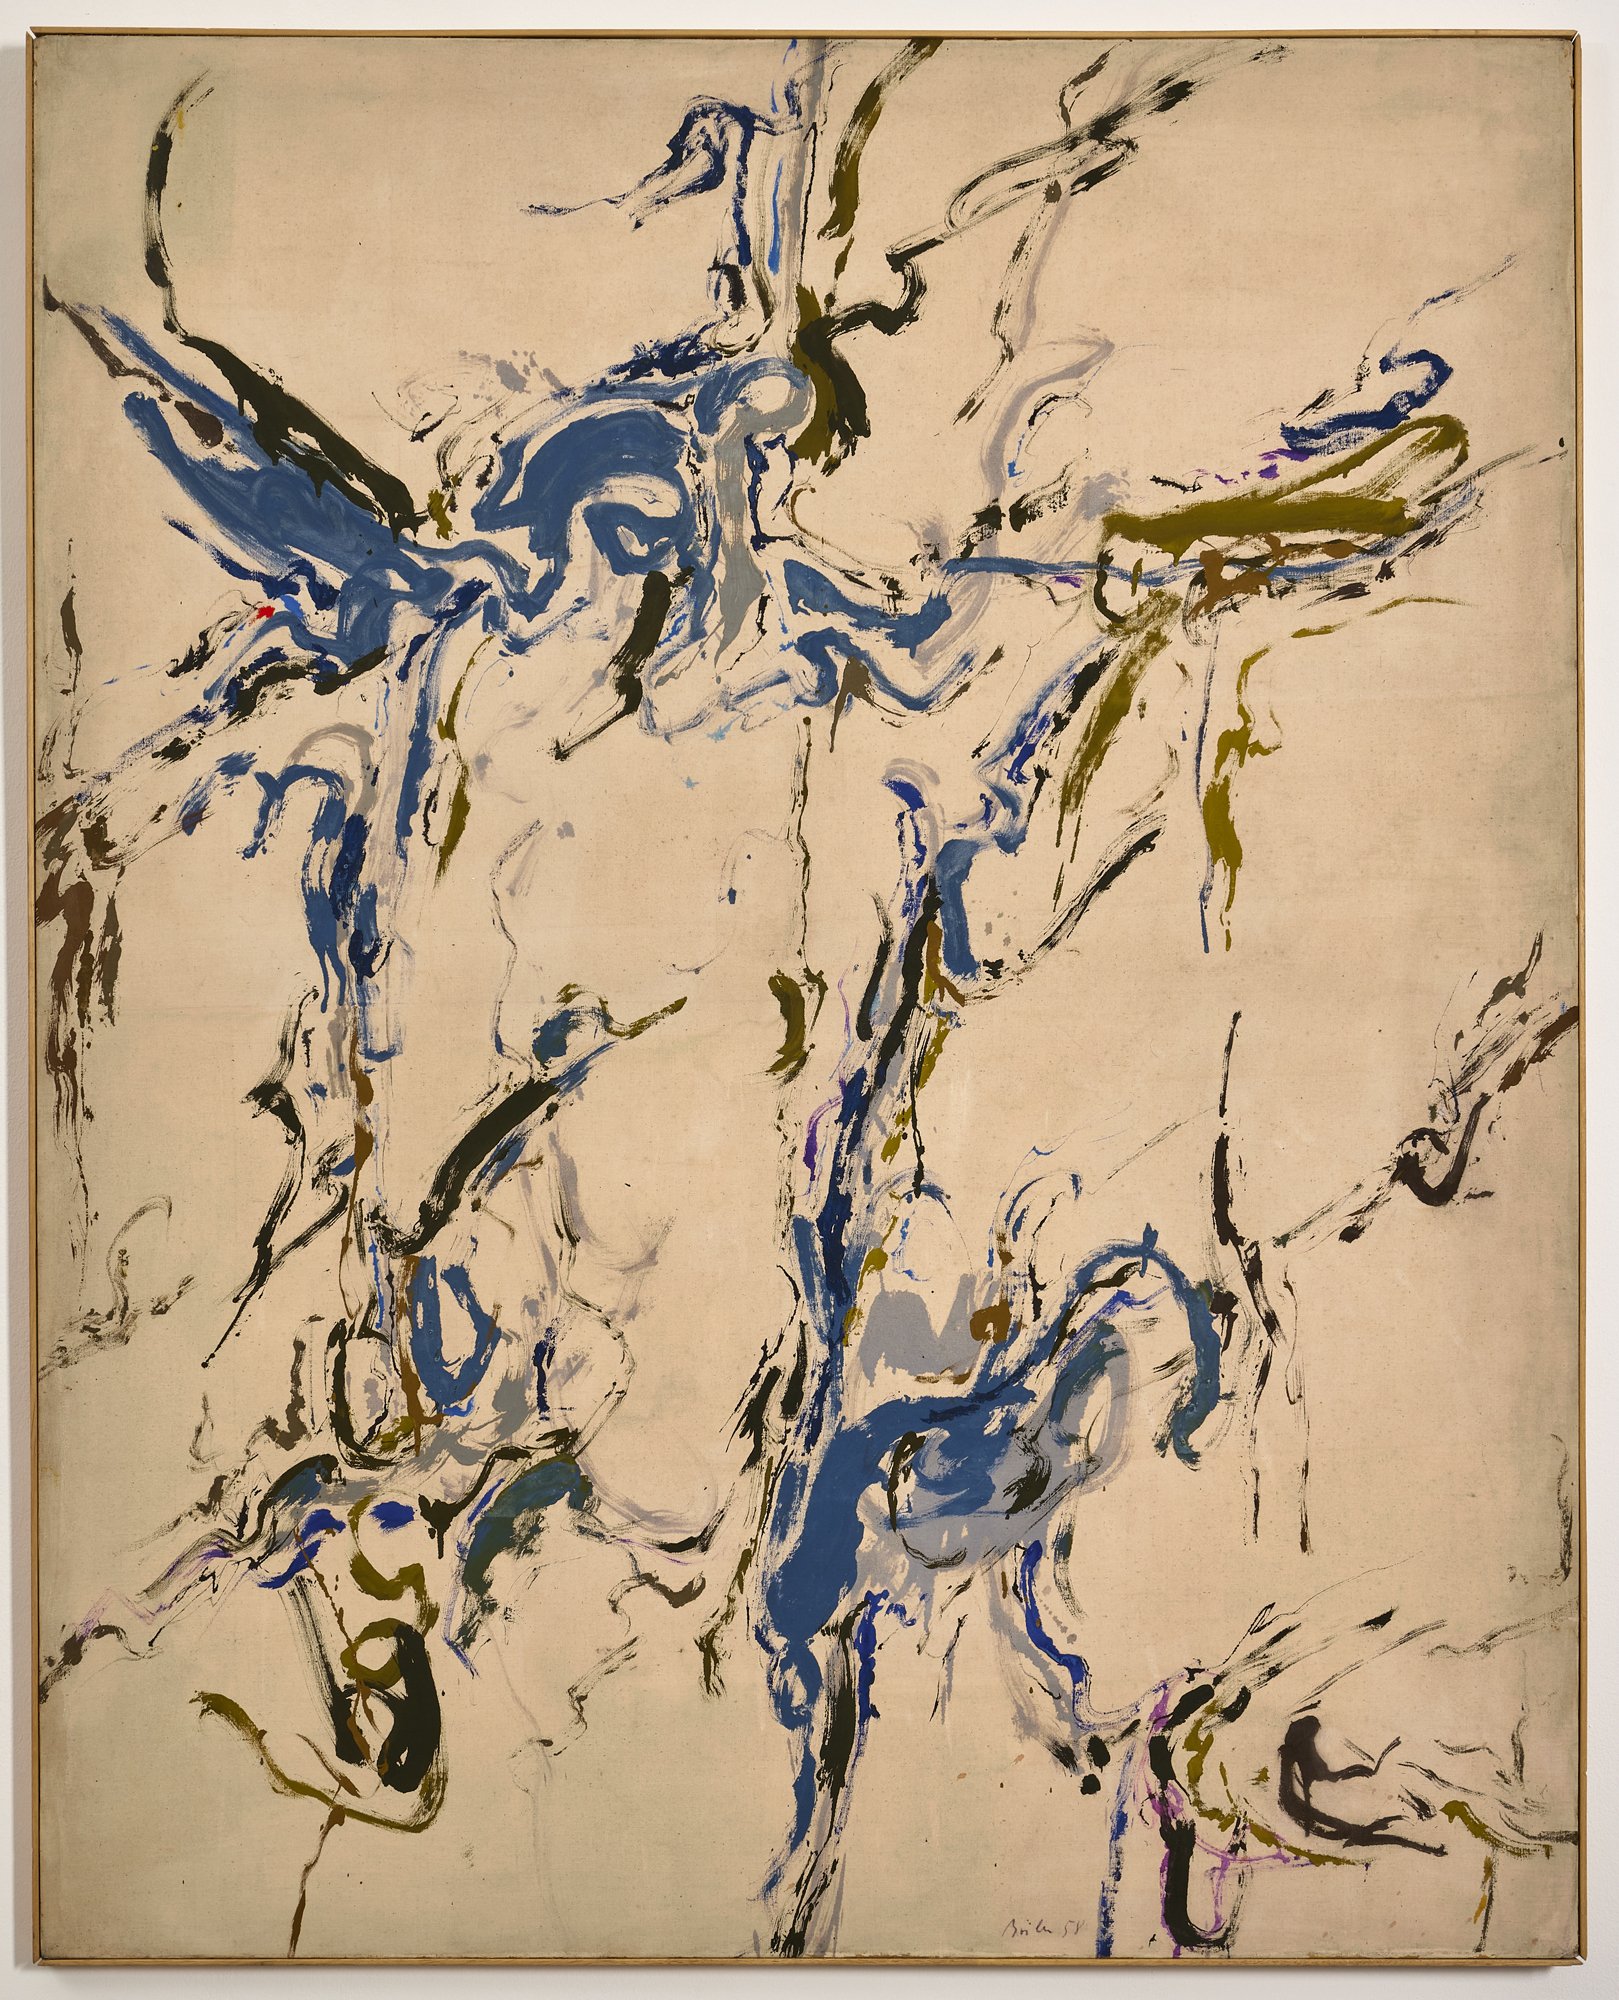 Luigi Boille, Espace lyrique, 1958, oil on canvas, 162 x 130 cm (LBo303355)_A